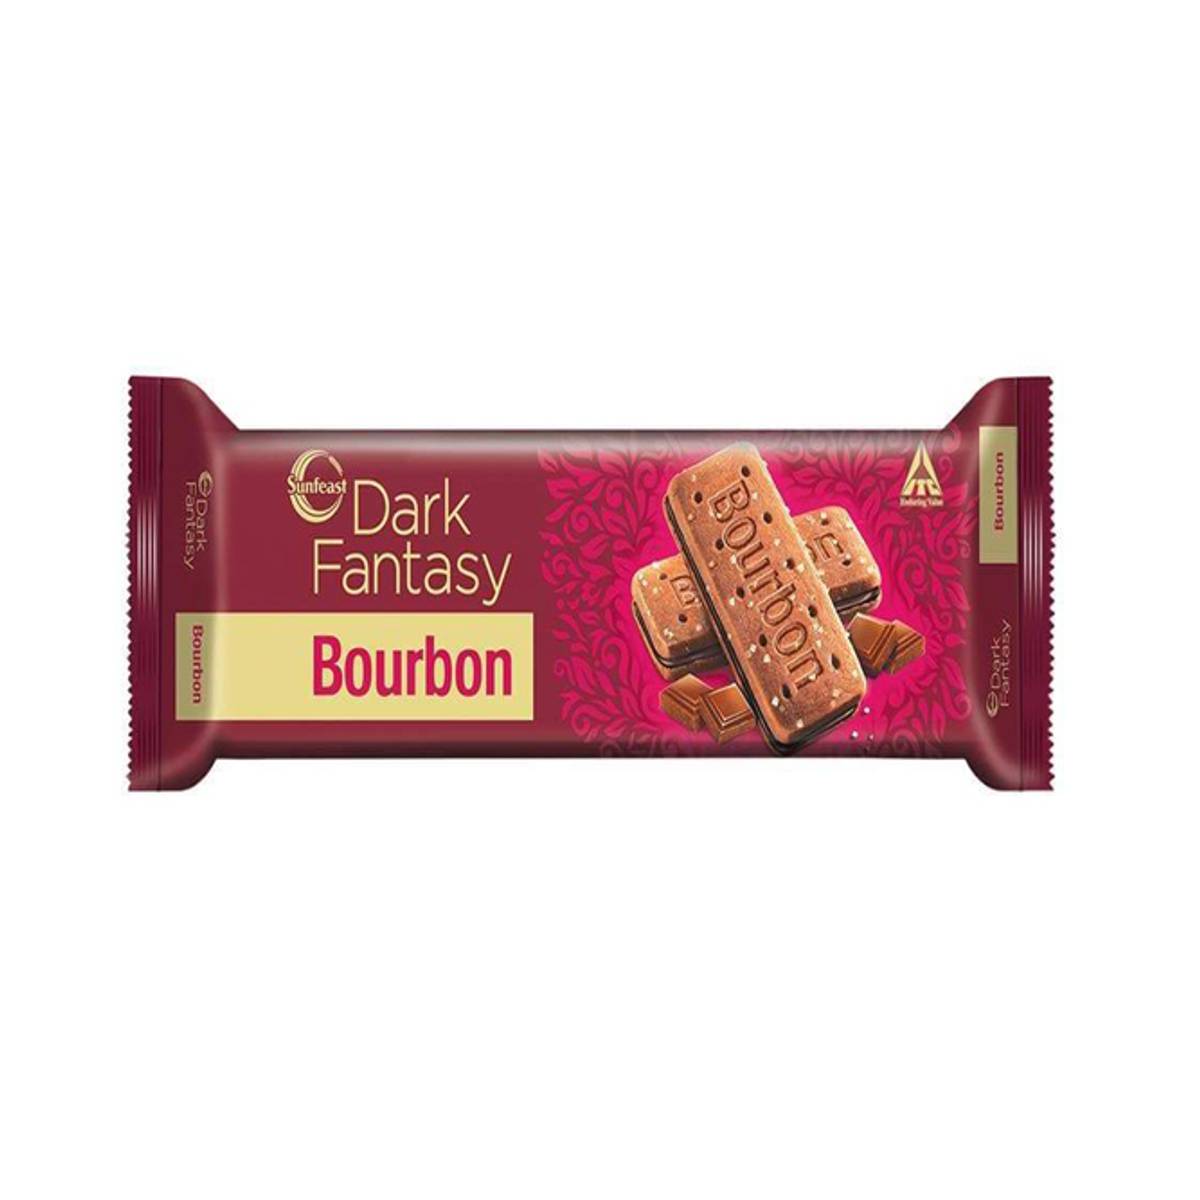 Sunfeast Dark Fantasy Bourbon biscuit 150